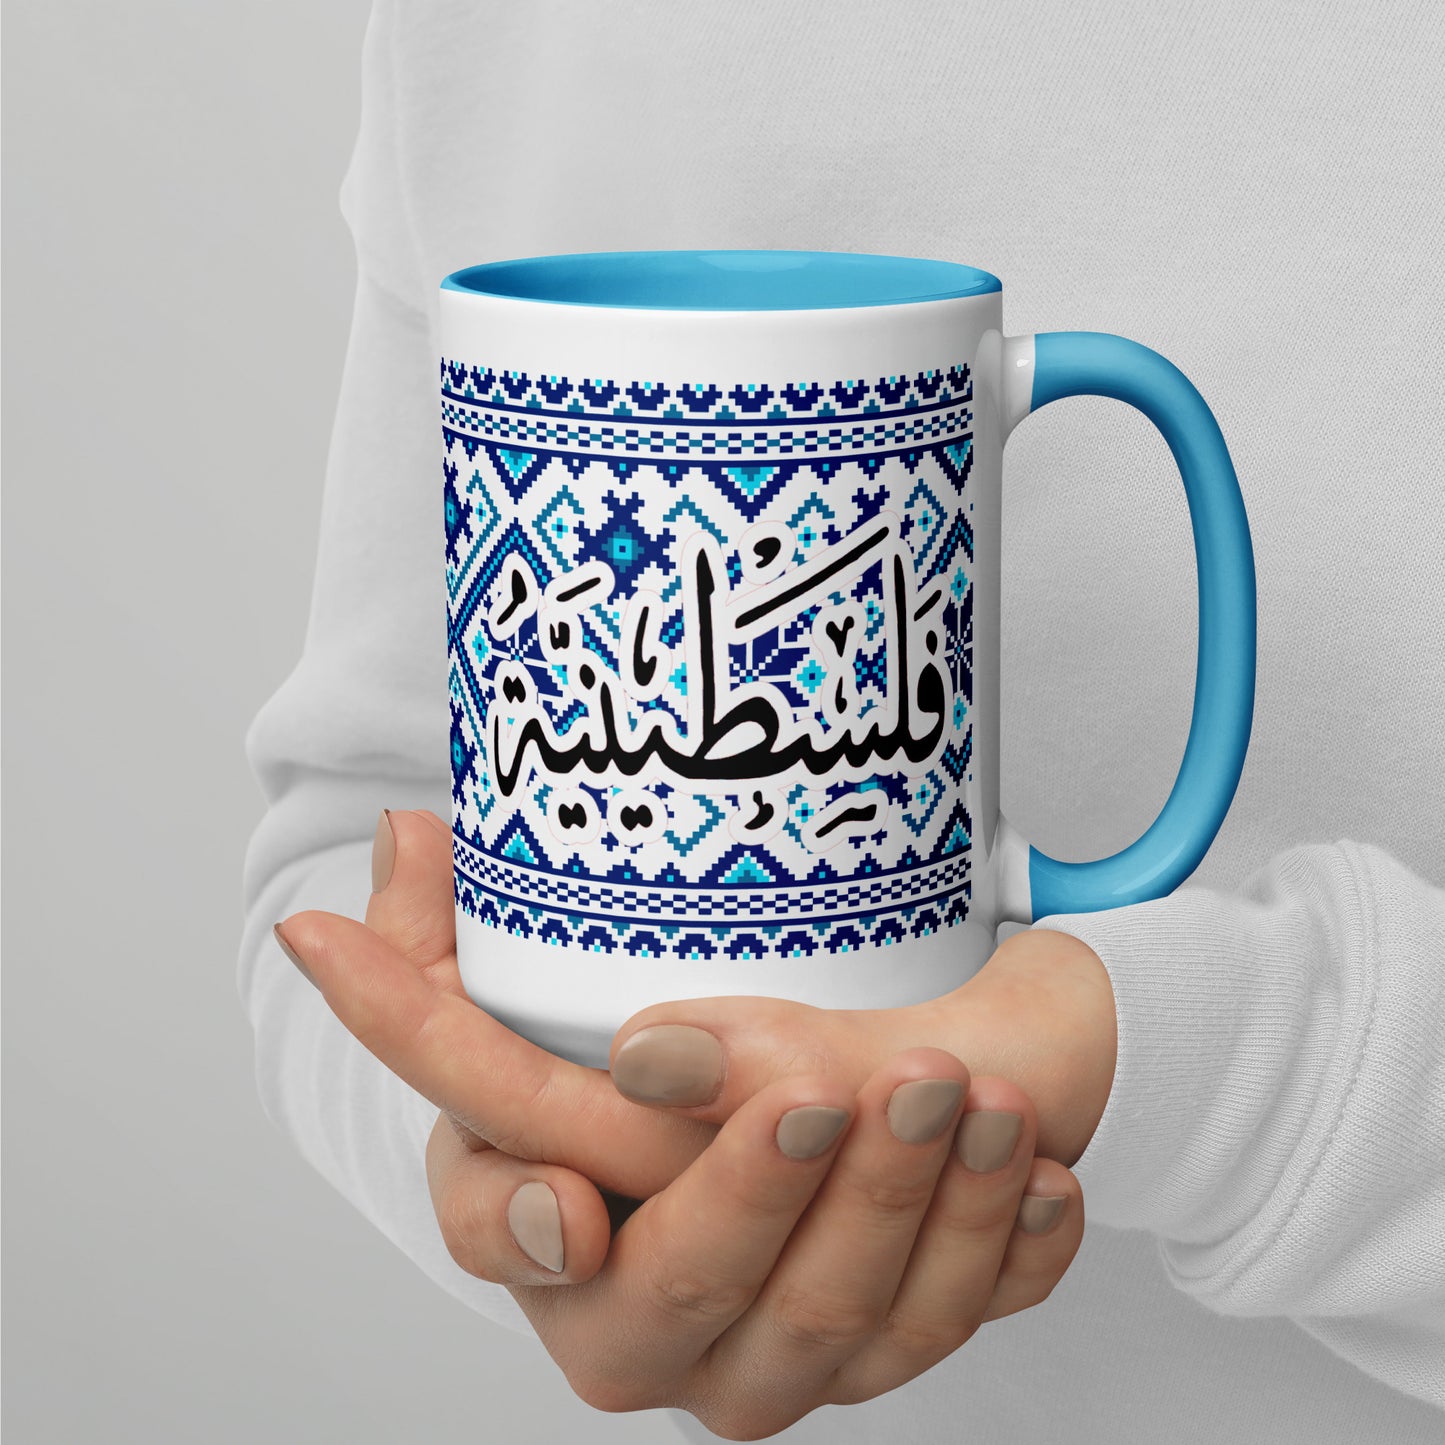 The "Falastinia Valor" Ceramic Mug